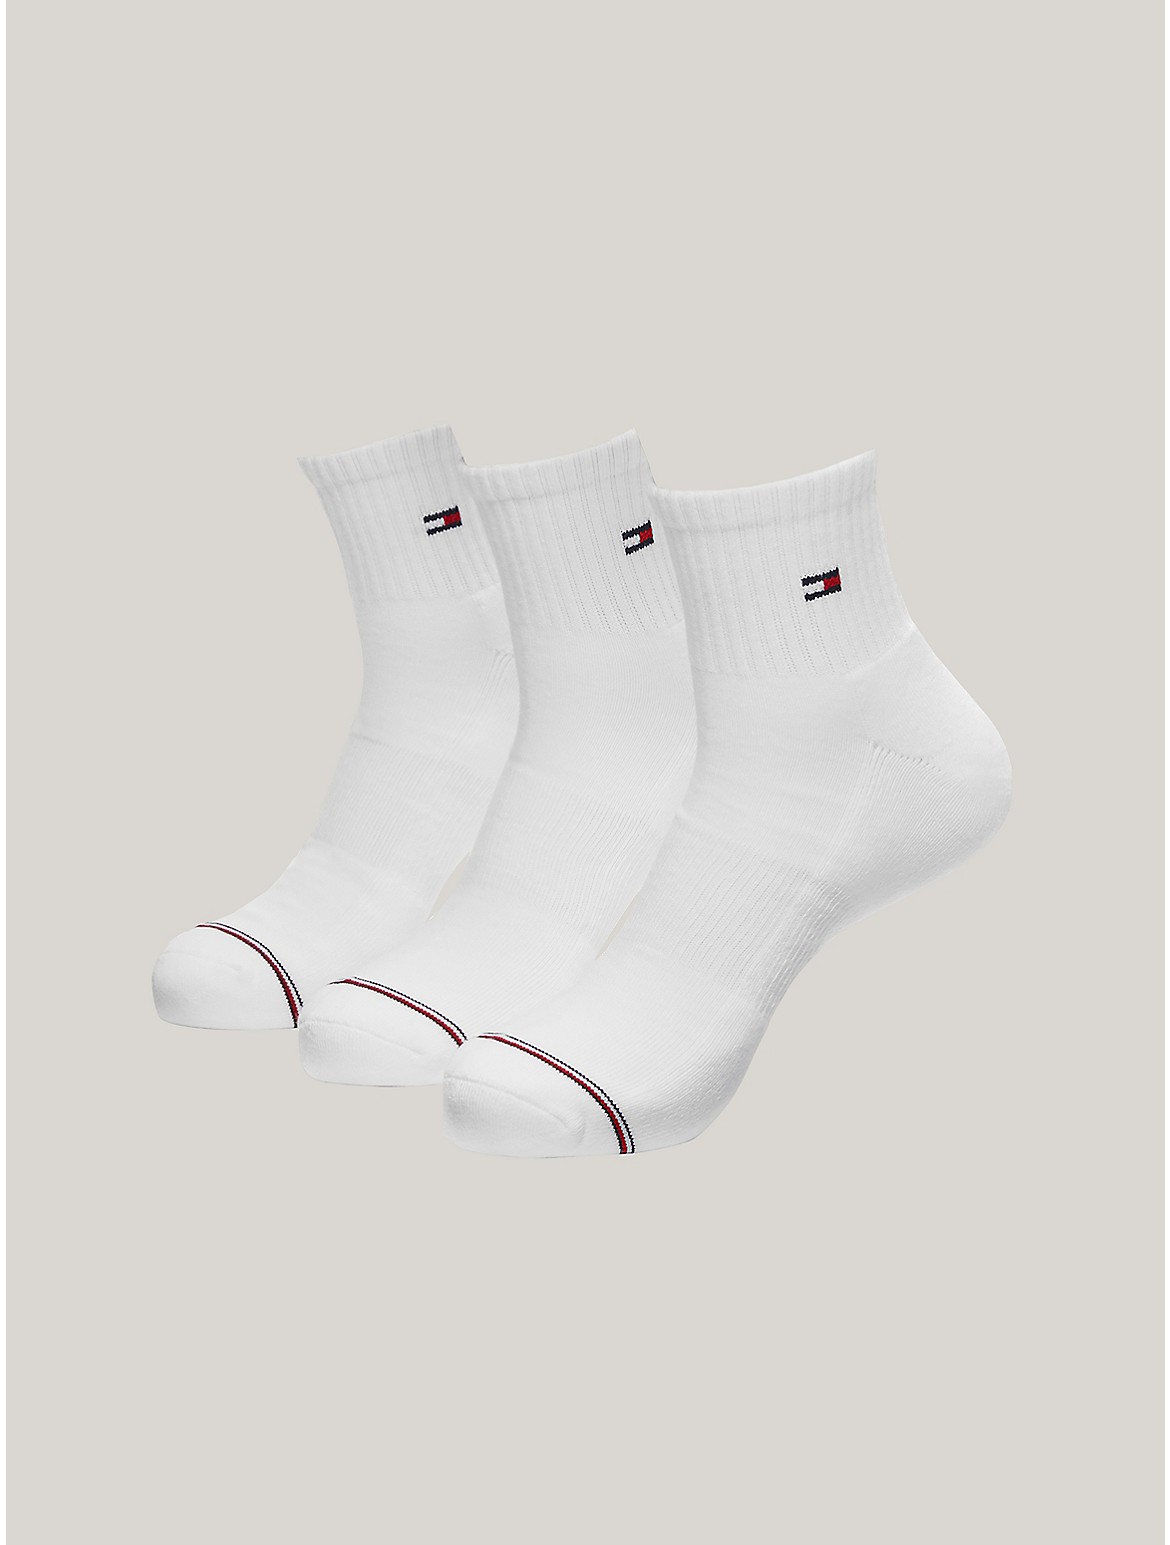 Tommy Hilfiger Men's Quarter Top Socks 3-Pack